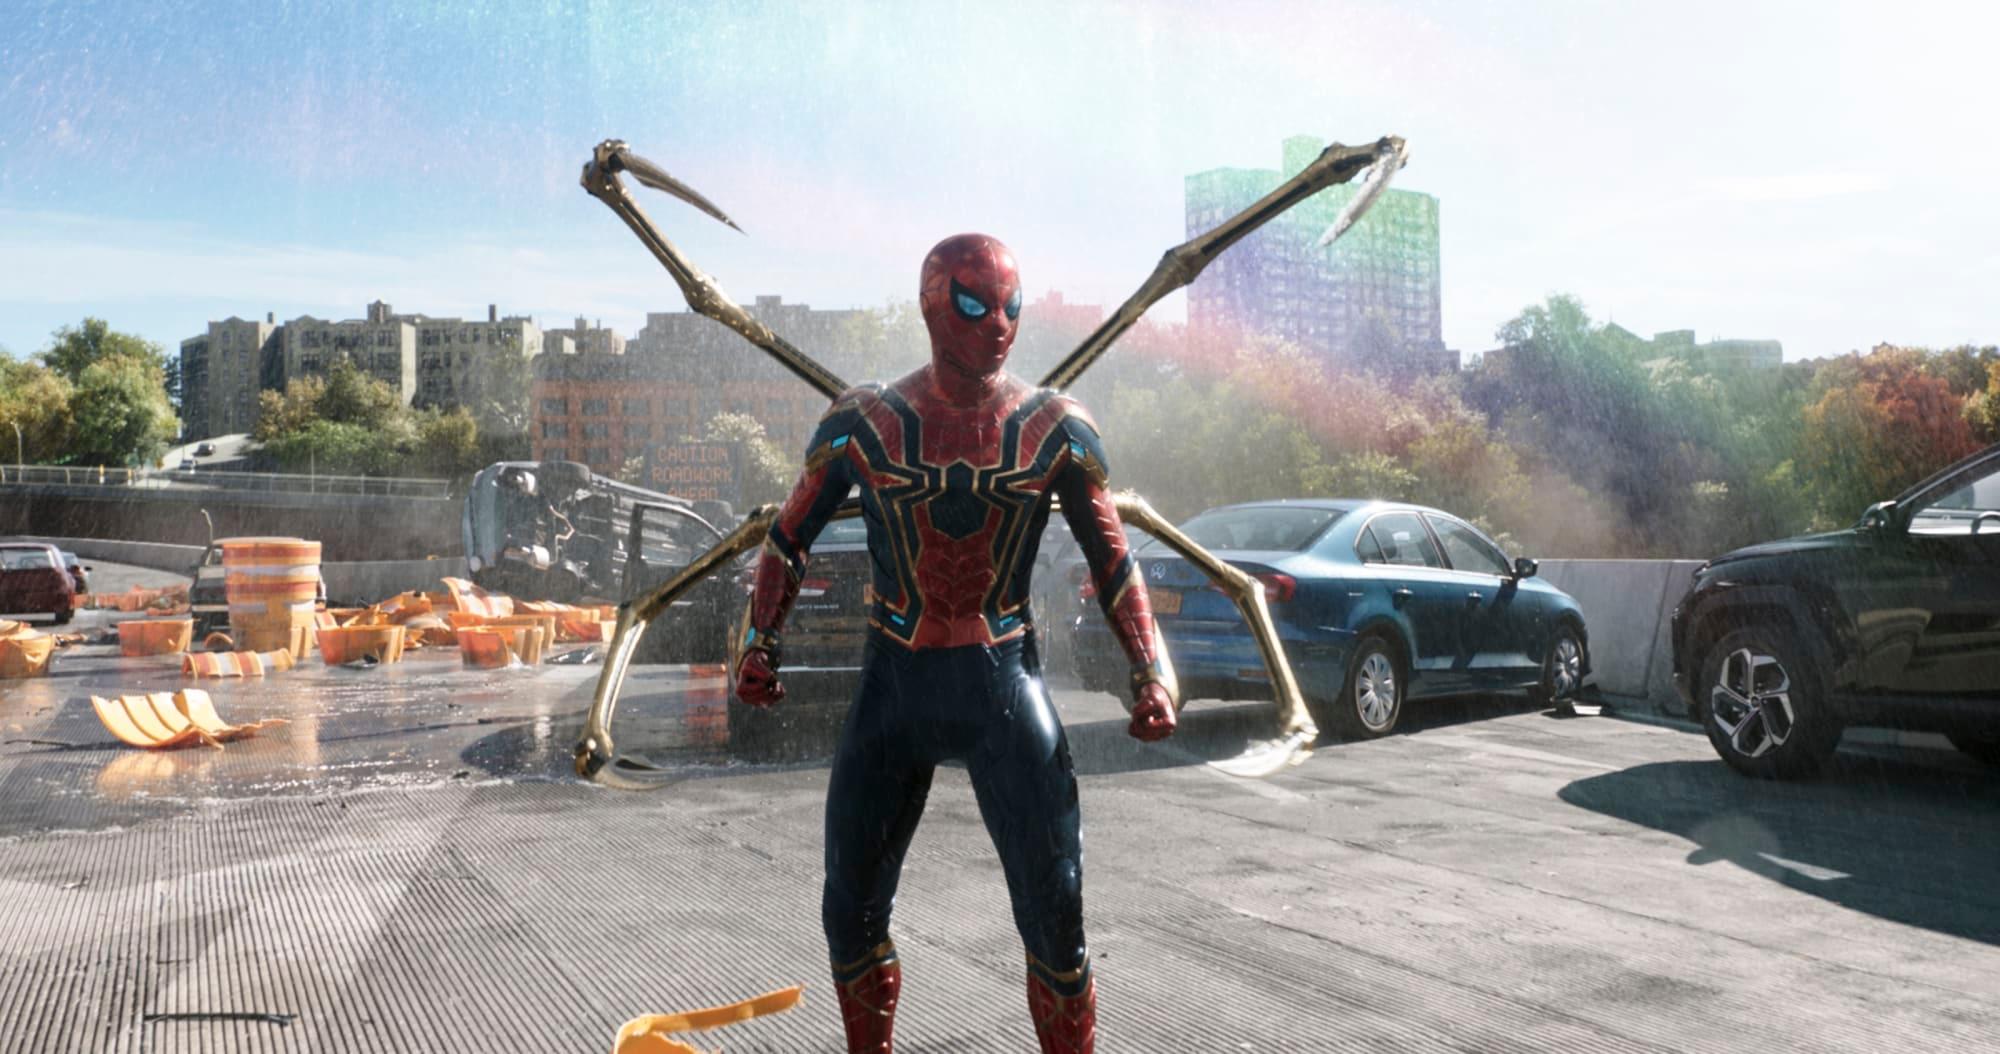 Definitie goochelaar Vervolgen Spider-Man: No Way Home' Trailer 2 Release Date and Time